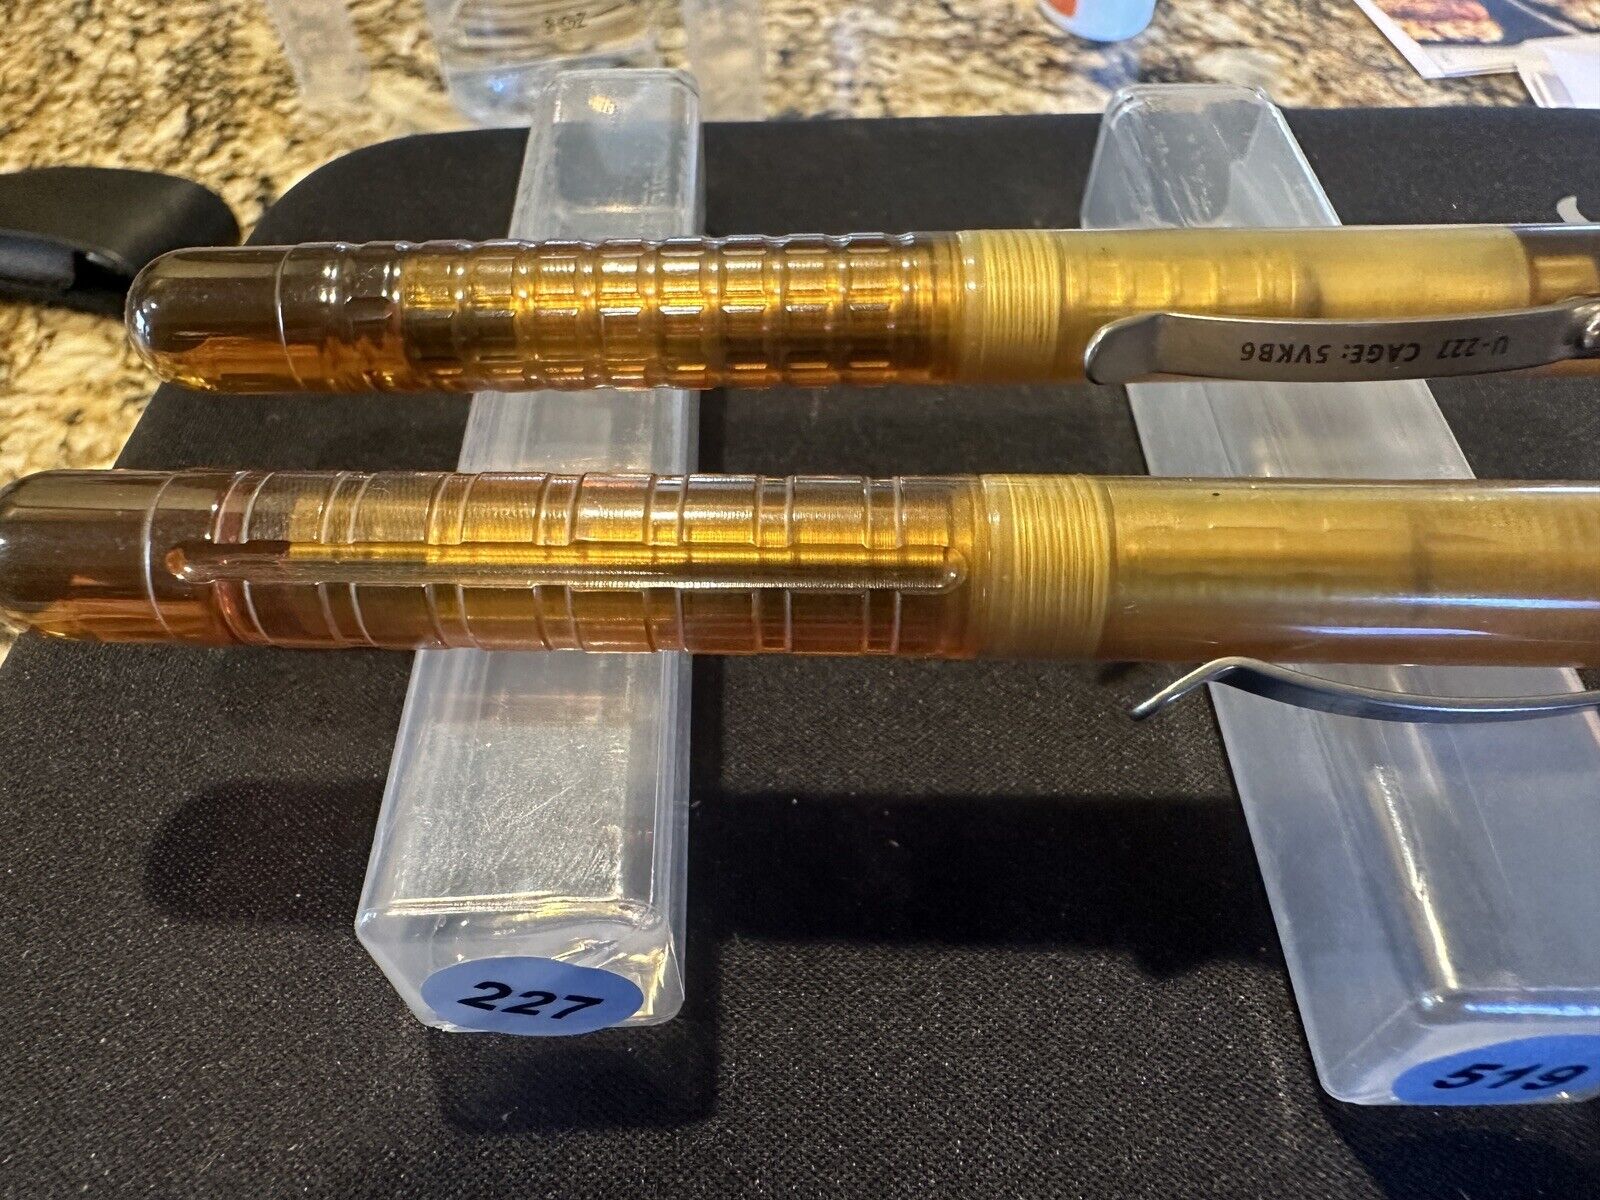 MARATAC Total (5) New Ultem:Titanium Embassy Pen(s) Ti Clip& Signator:Serialized